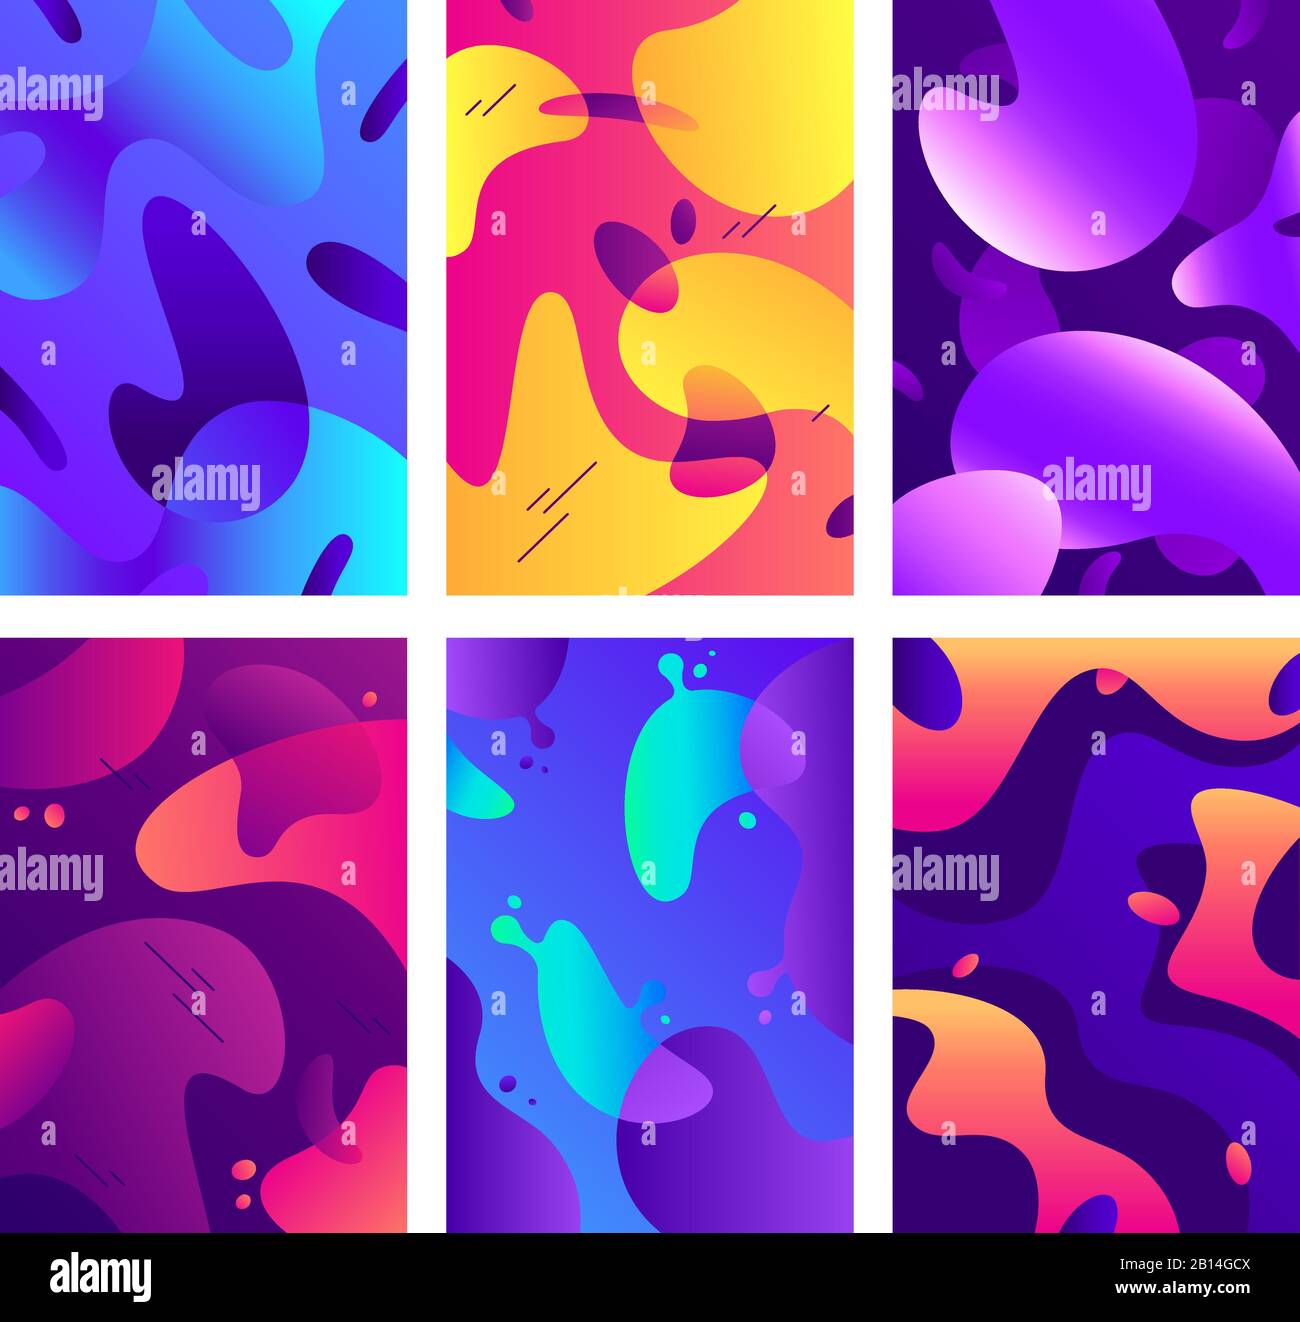 Liquid Shapes Poster. Moderne Farbflüssigkeitsform, abstrakte diffuse Farben und modische Gradientenplaker-Hintergrundvektor-Illustration Stock Vektor